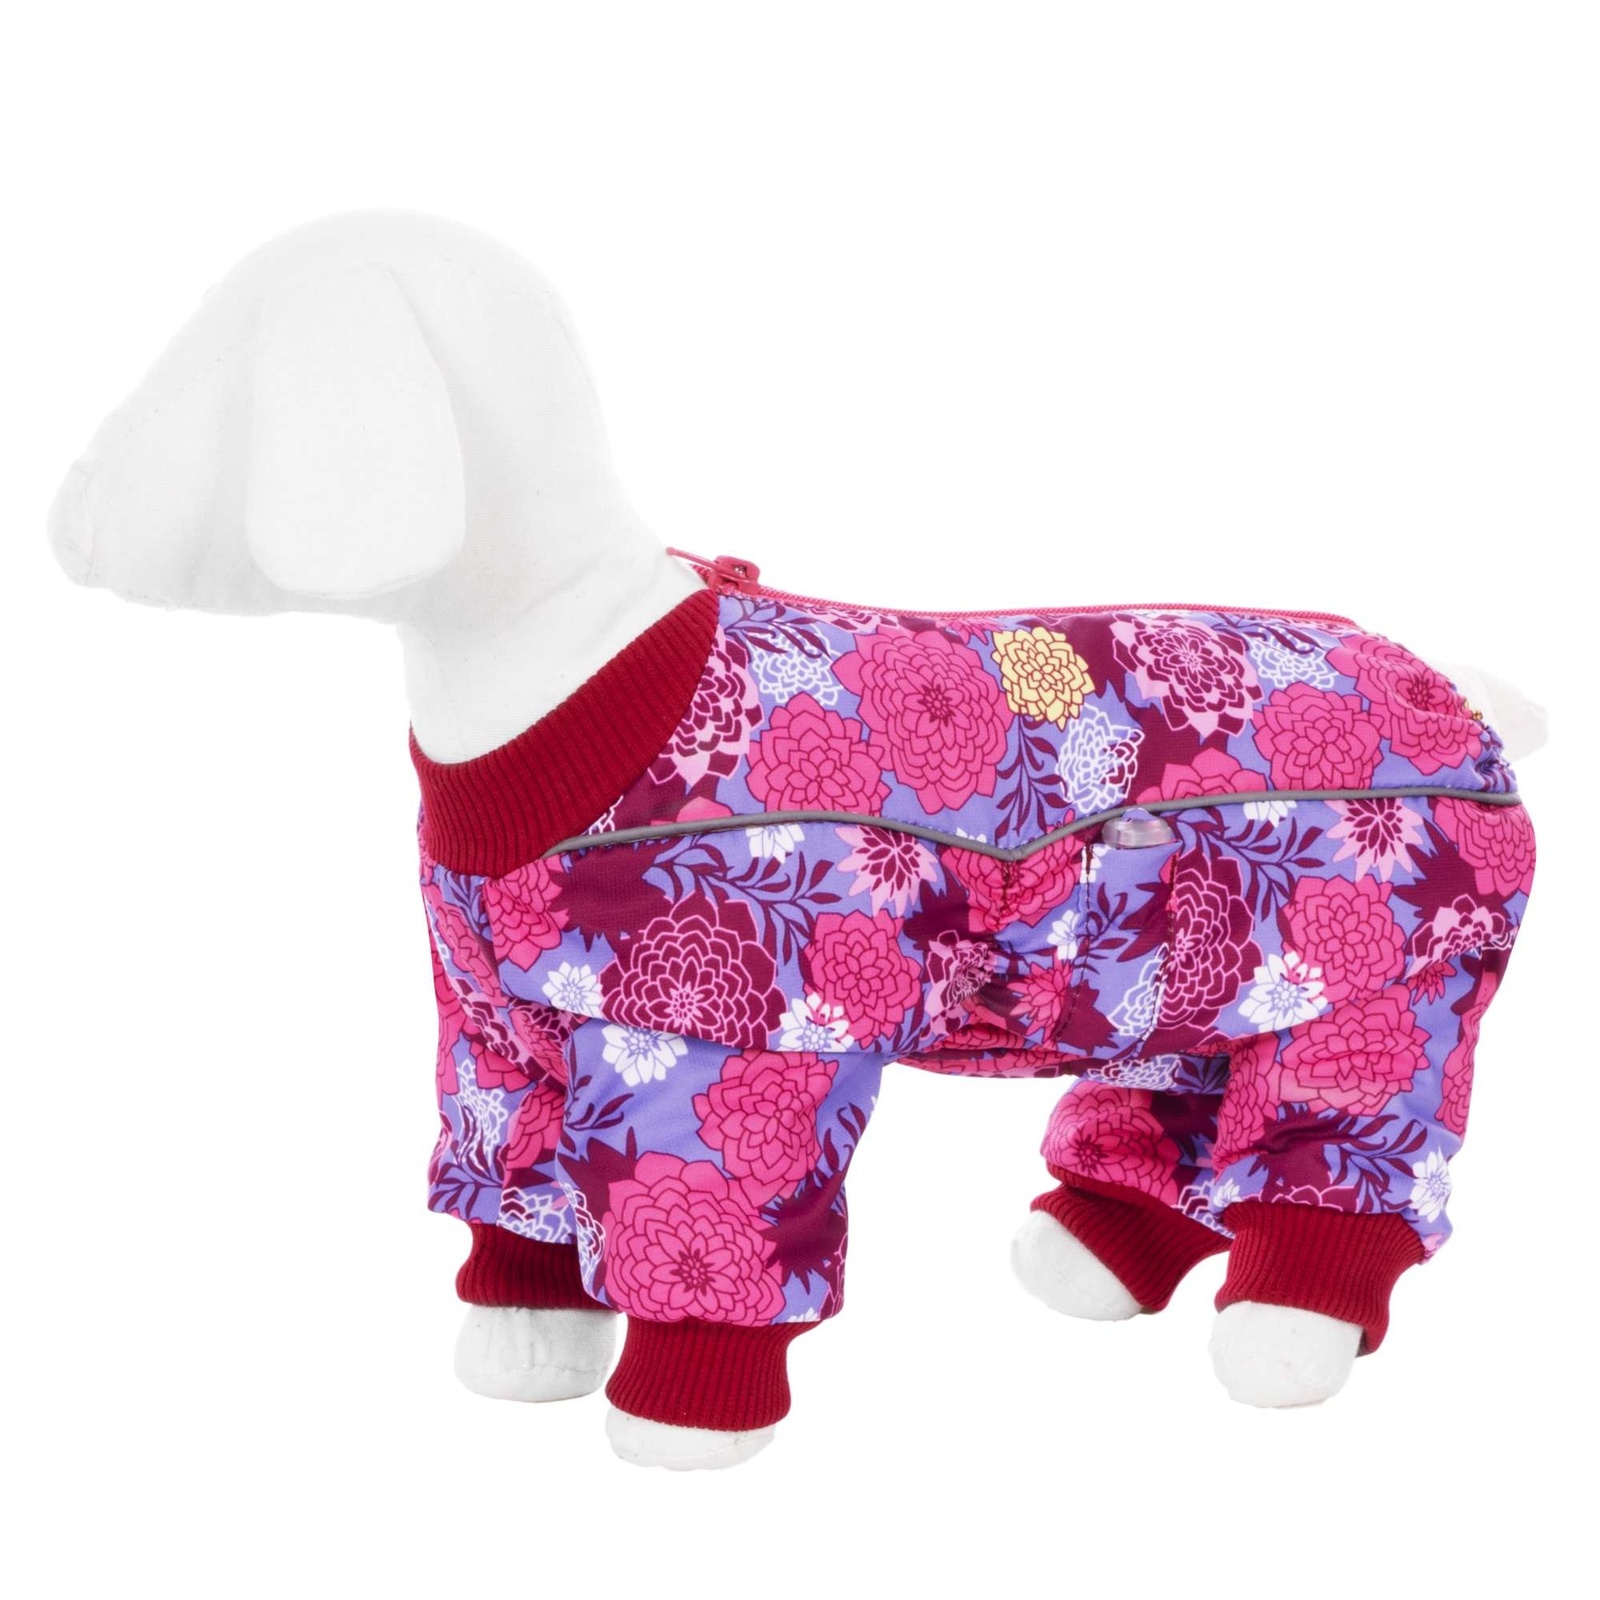 Yami-Yami одежда Yami-Yami одежда комбинезон для собак малых пород, на флисе с рисунком цветы (100 г) yami yami одежда yami yami одежда комбинезон для собак малых пород фиолетовый на флисе хl 4